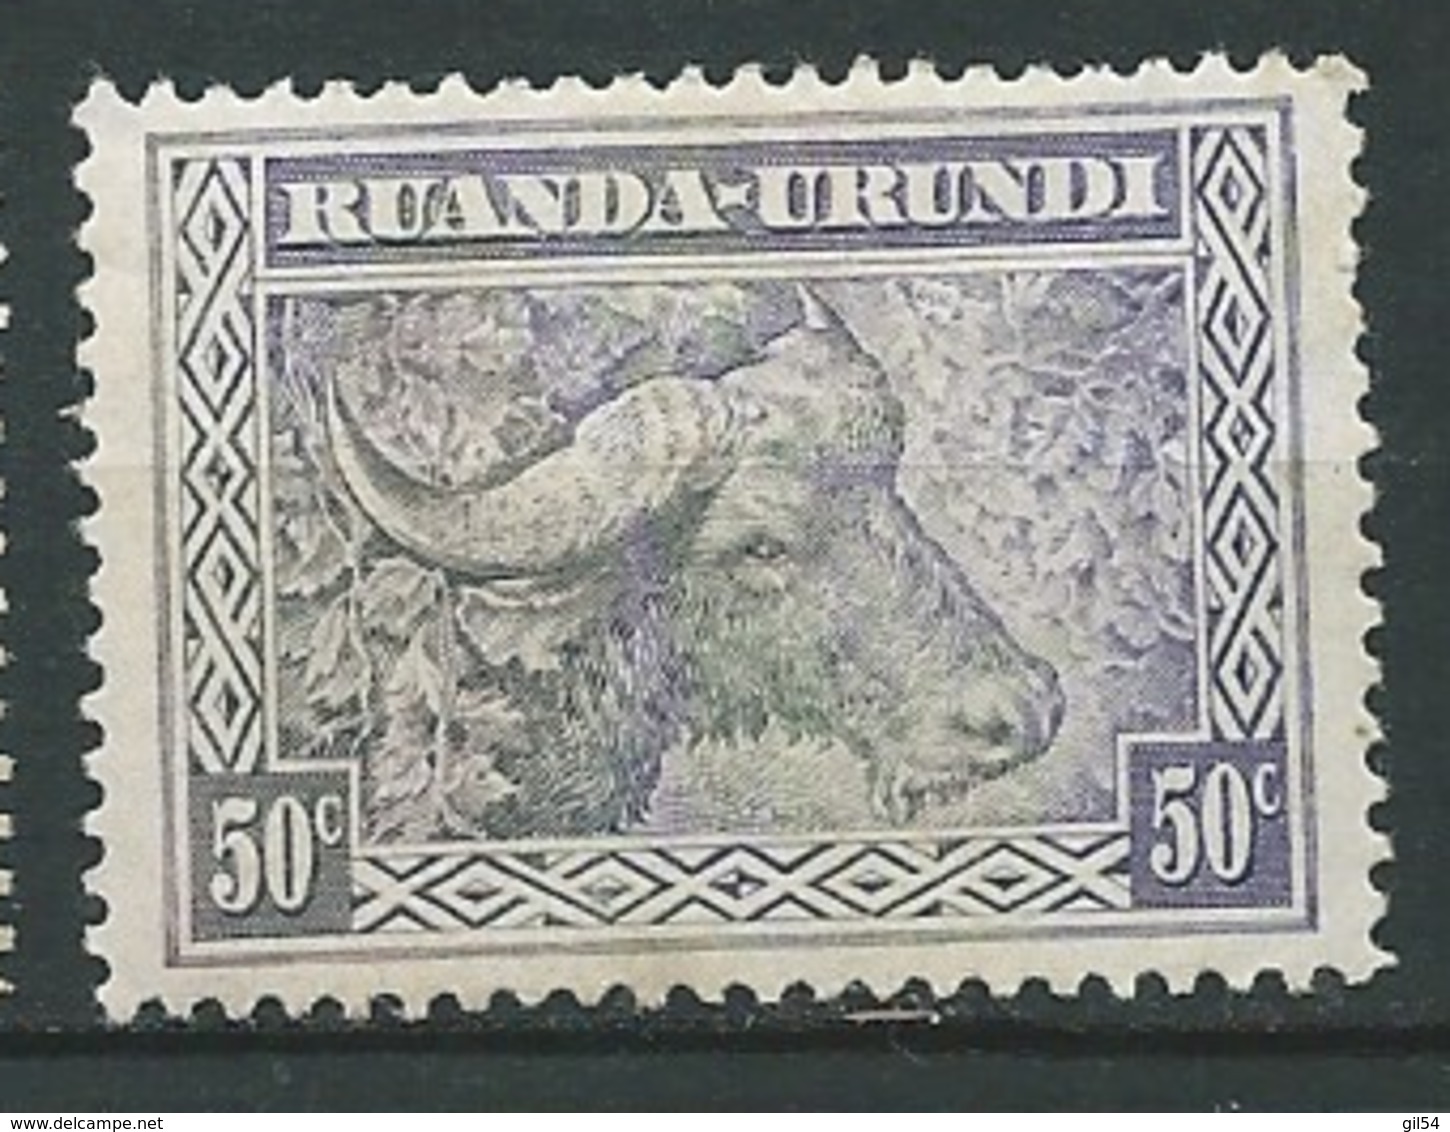 Ruanda - Urandi       - Yvert N° 96 *   -  Bce 15827 - Ungebraucht